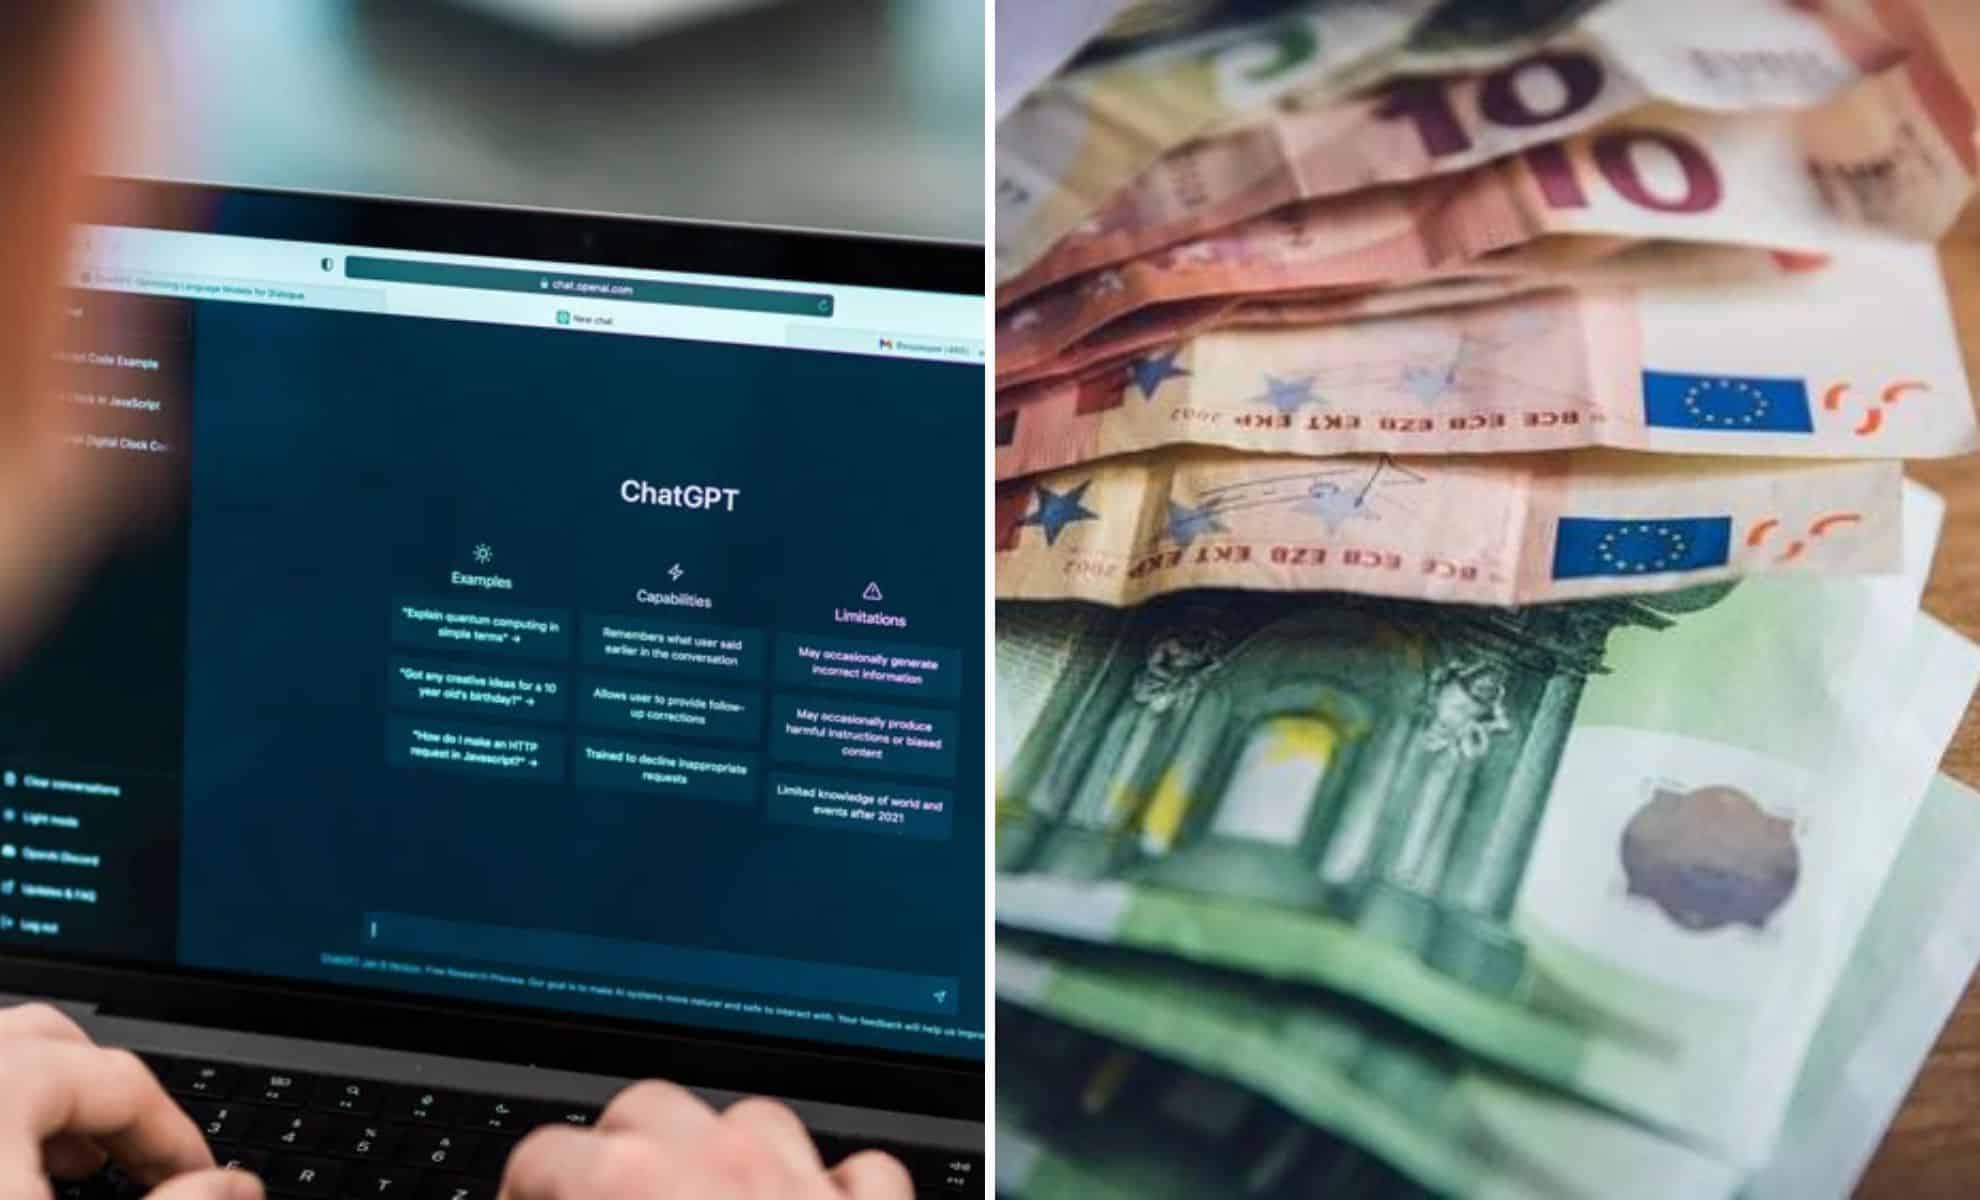 Gagner 1000 euros grâce à ChatGPT : transformer l'IA en une machine à faire de l'argent